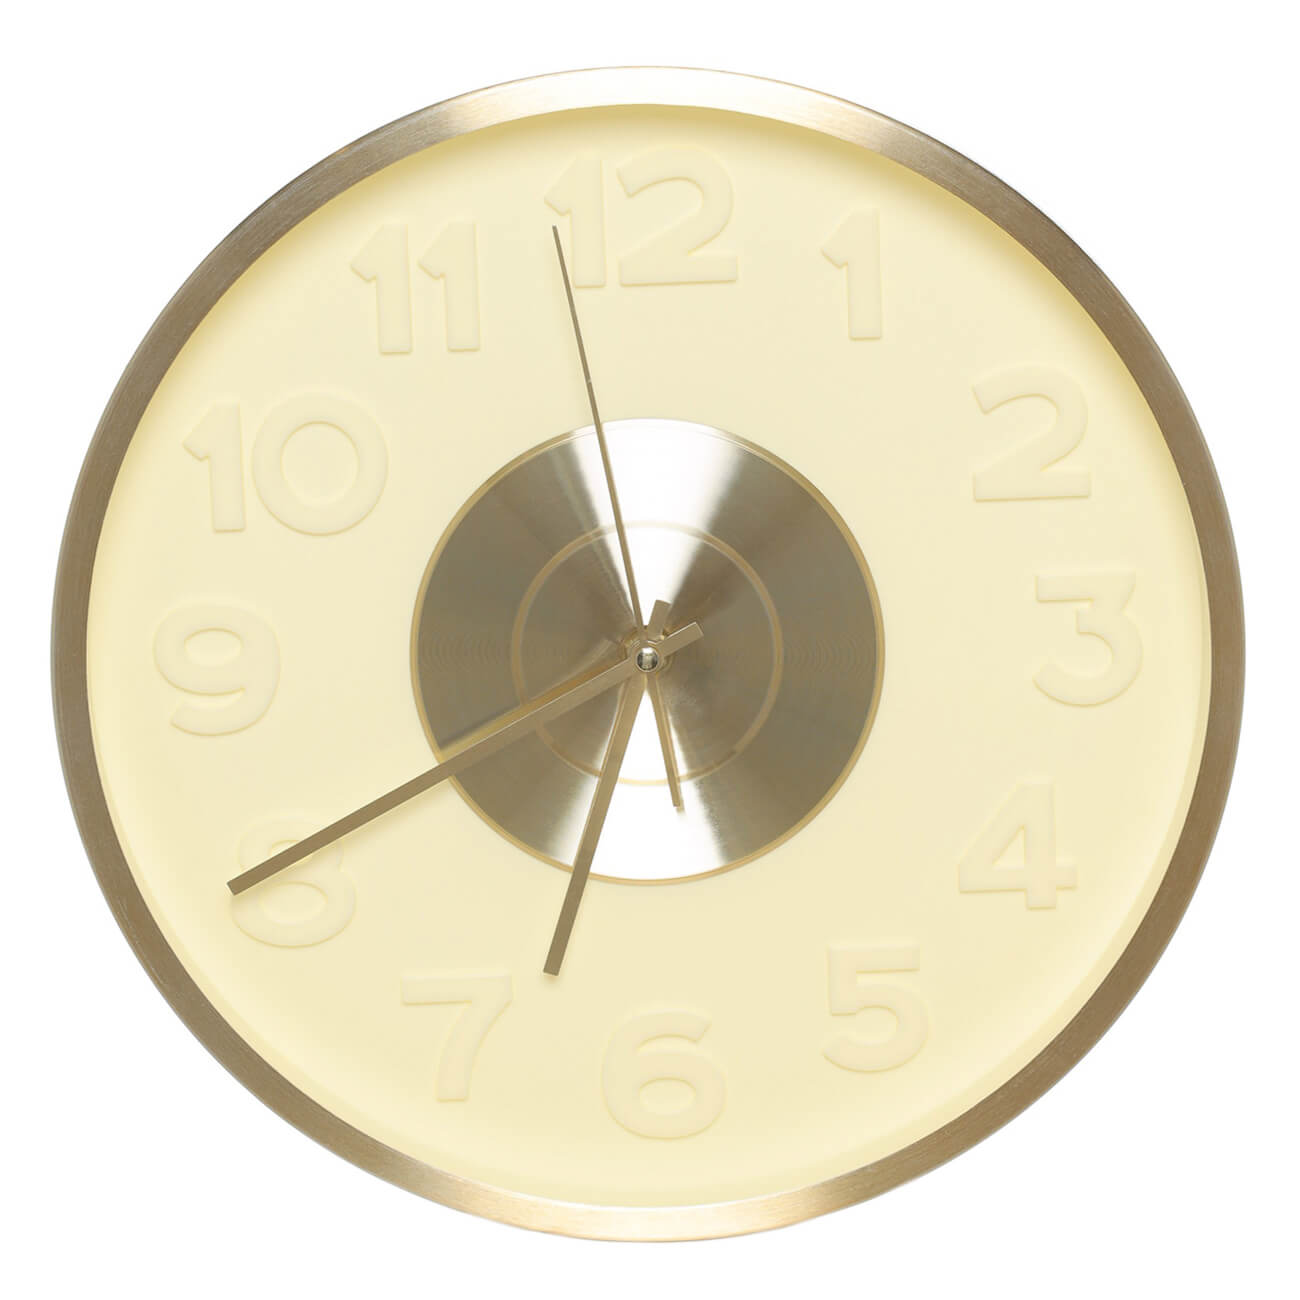 Часы настенные, 30 см, с подсветкой, пластик/стекло, круглые, золотистые, Fantastic gold часы настенные atmosphera world круглые ø67 см